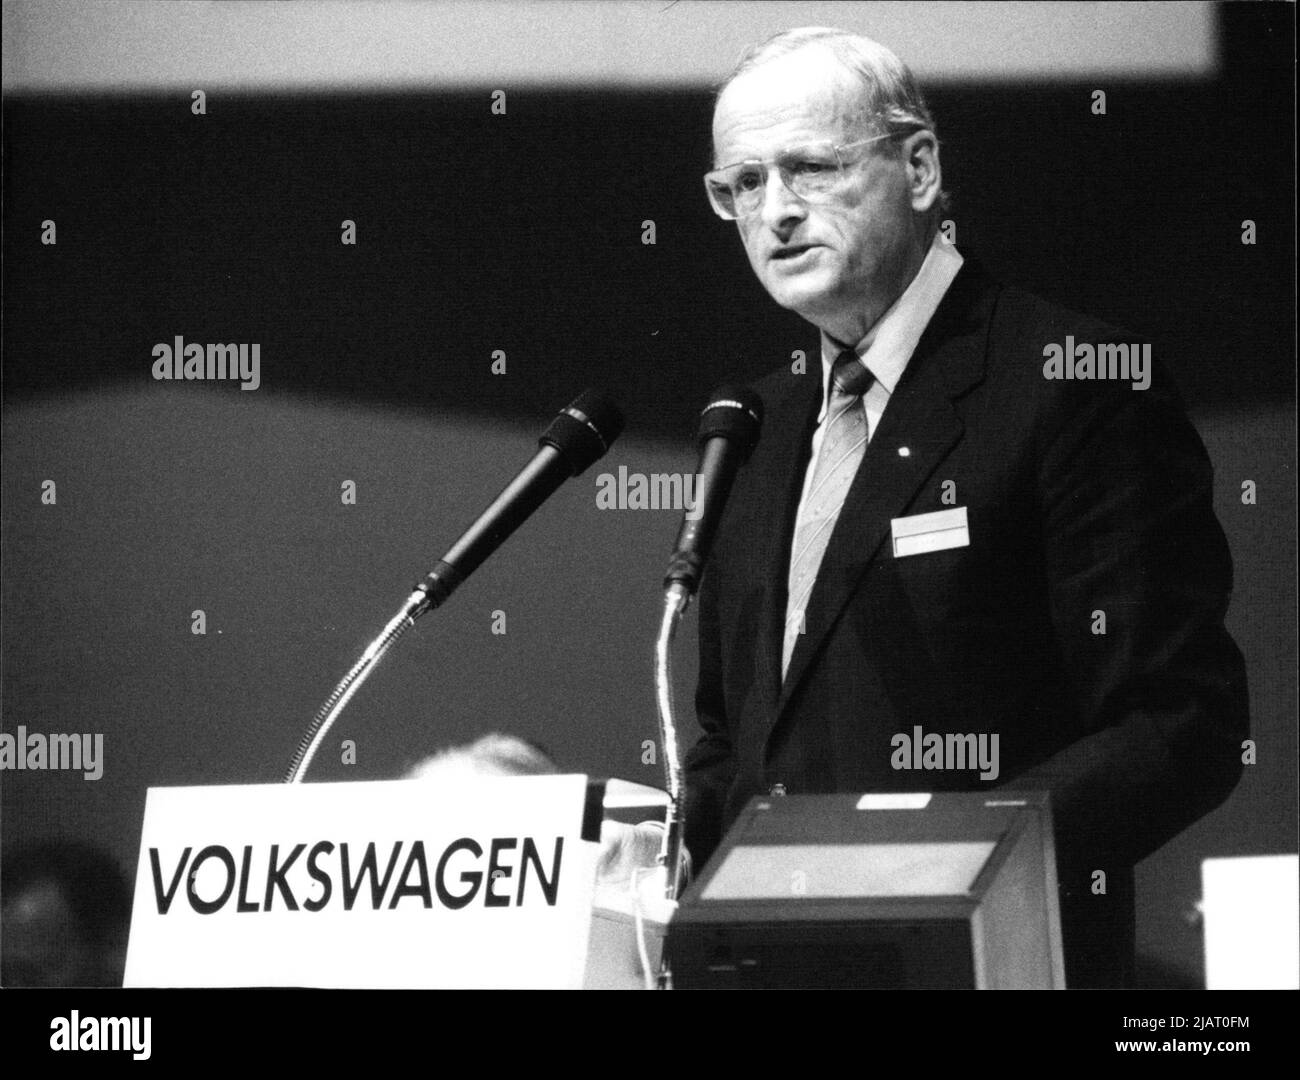 Fotografie des Vorstandsvorsitzenden der Volkswagen AG, Carl Horst Hahn, bei seiner Rede auf der VW-Hauptversammlung 1987 in Wolfsburg. Stock Photo